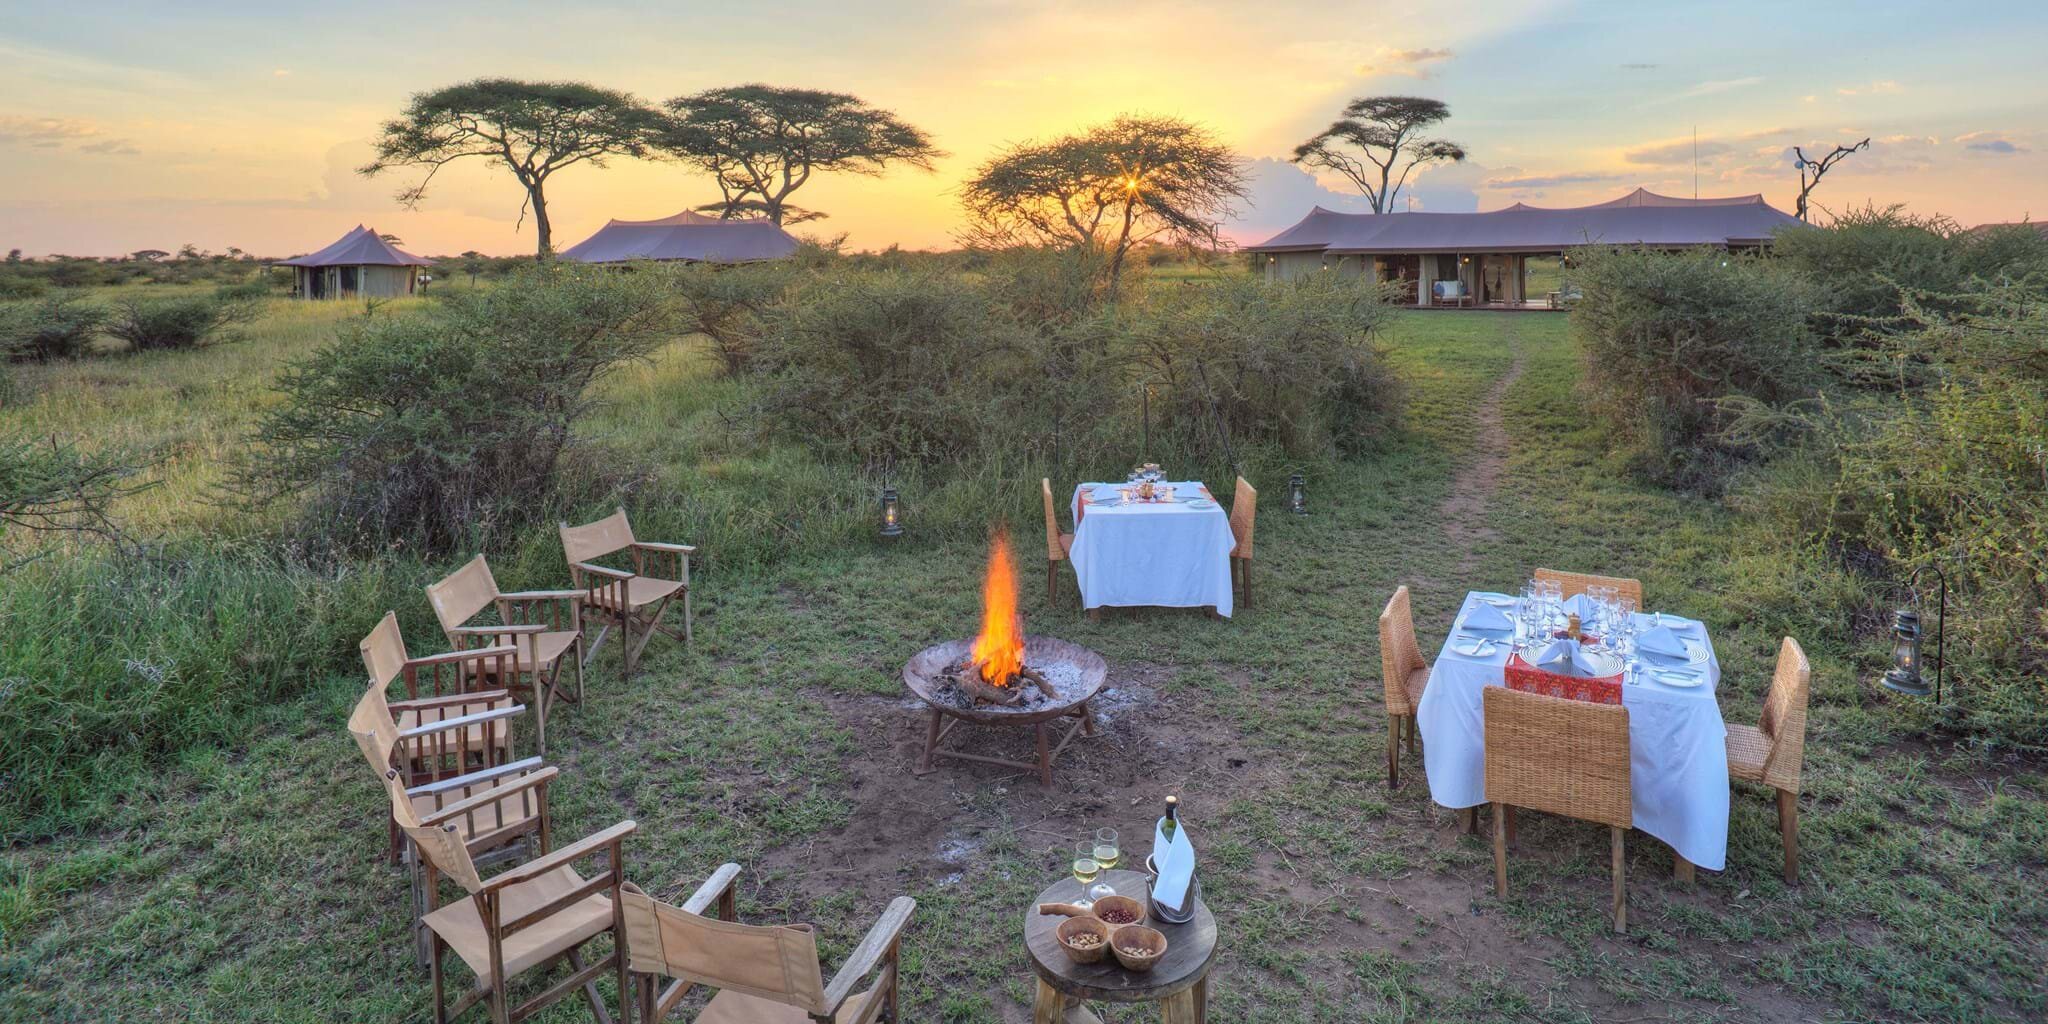 Safari Campfire in the Serengeti